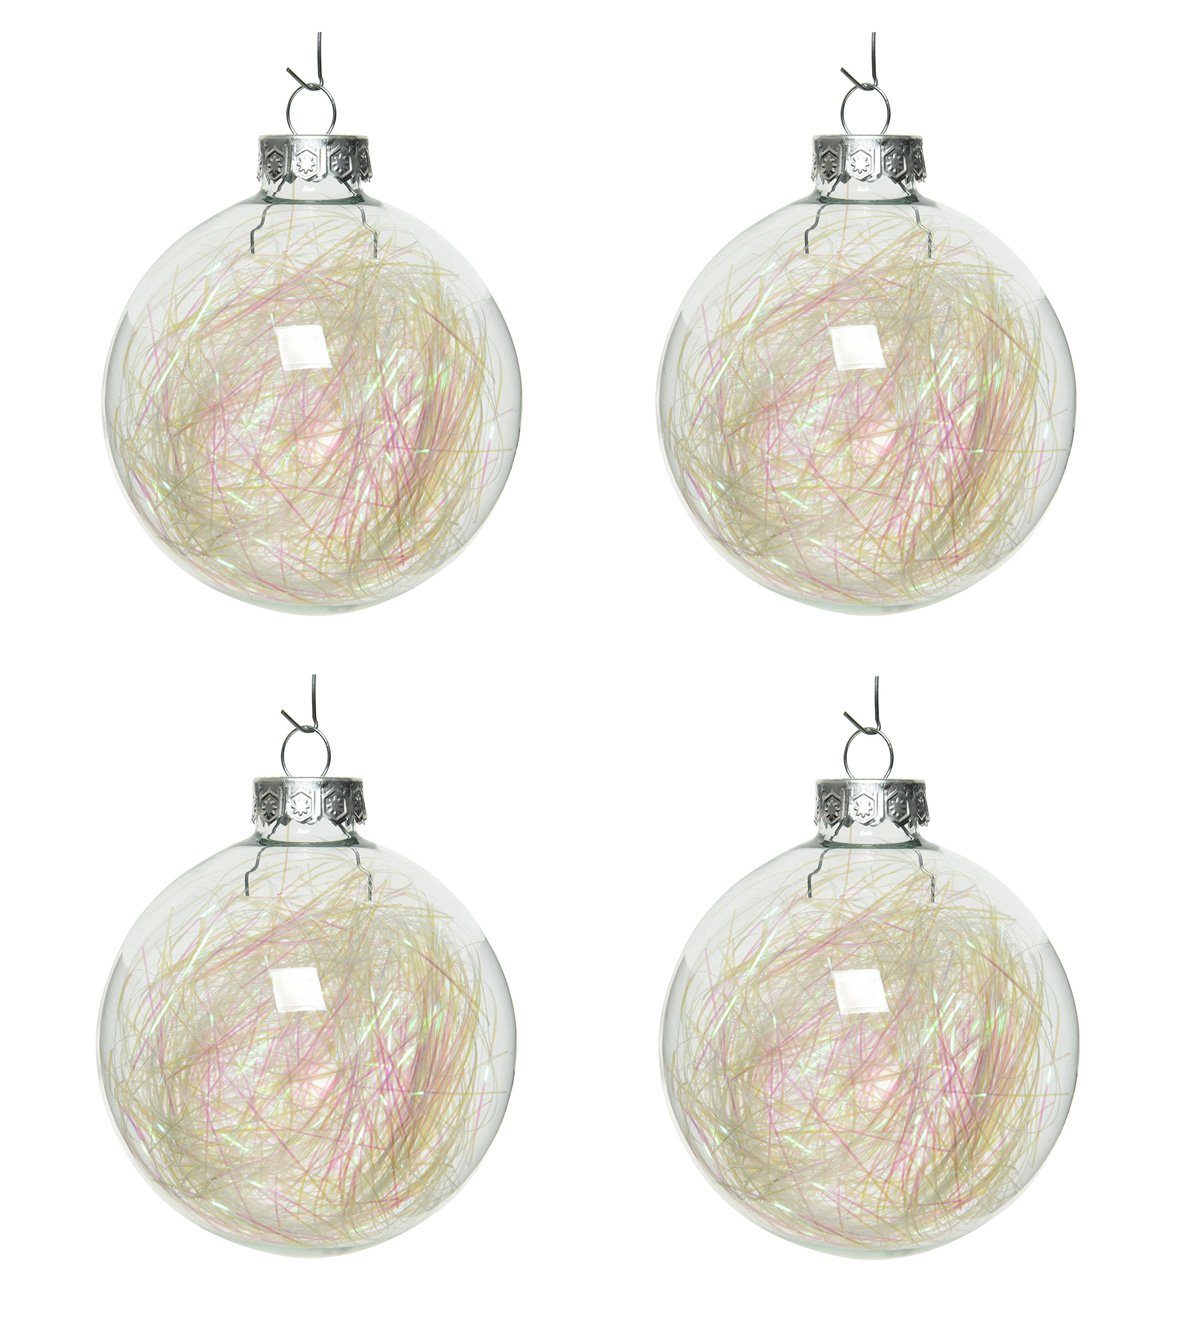 Decoris season decorations Weihnachtsbaumkugel, Weihnachtskugeln Glas mit Lametta gefüllt 7cm klar irisierend, 4er Set